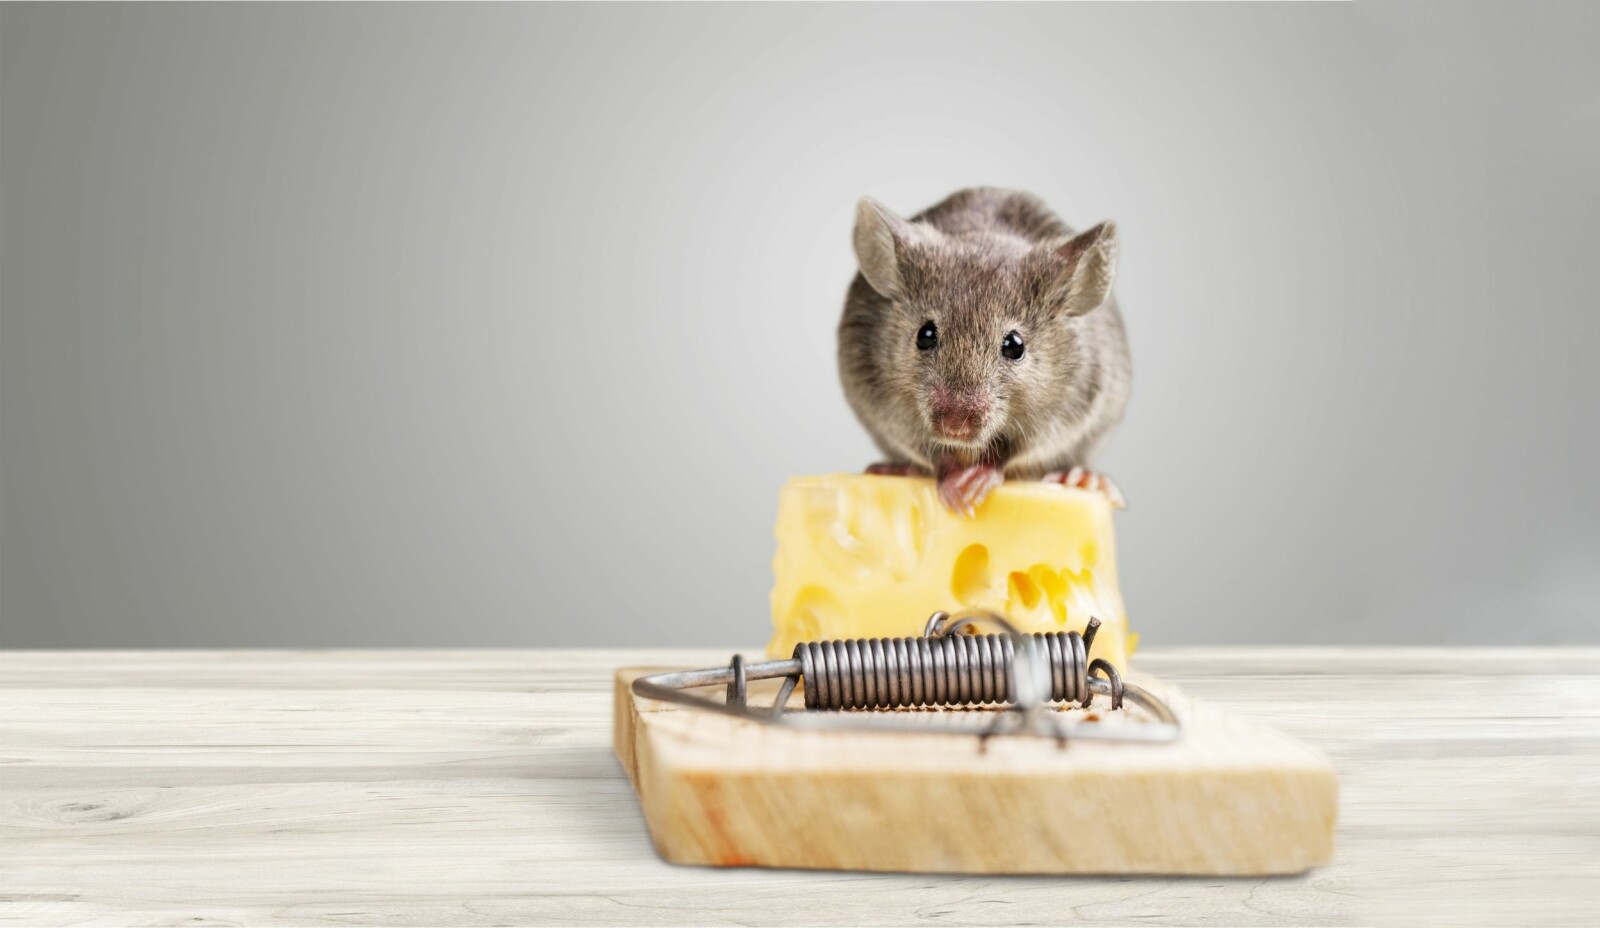 <b>SETT OPP FELLE:</b> Musefeller er effektive, men du bør nok prøve med en mindre ostebit som åte. (Foto: Shutterstock)